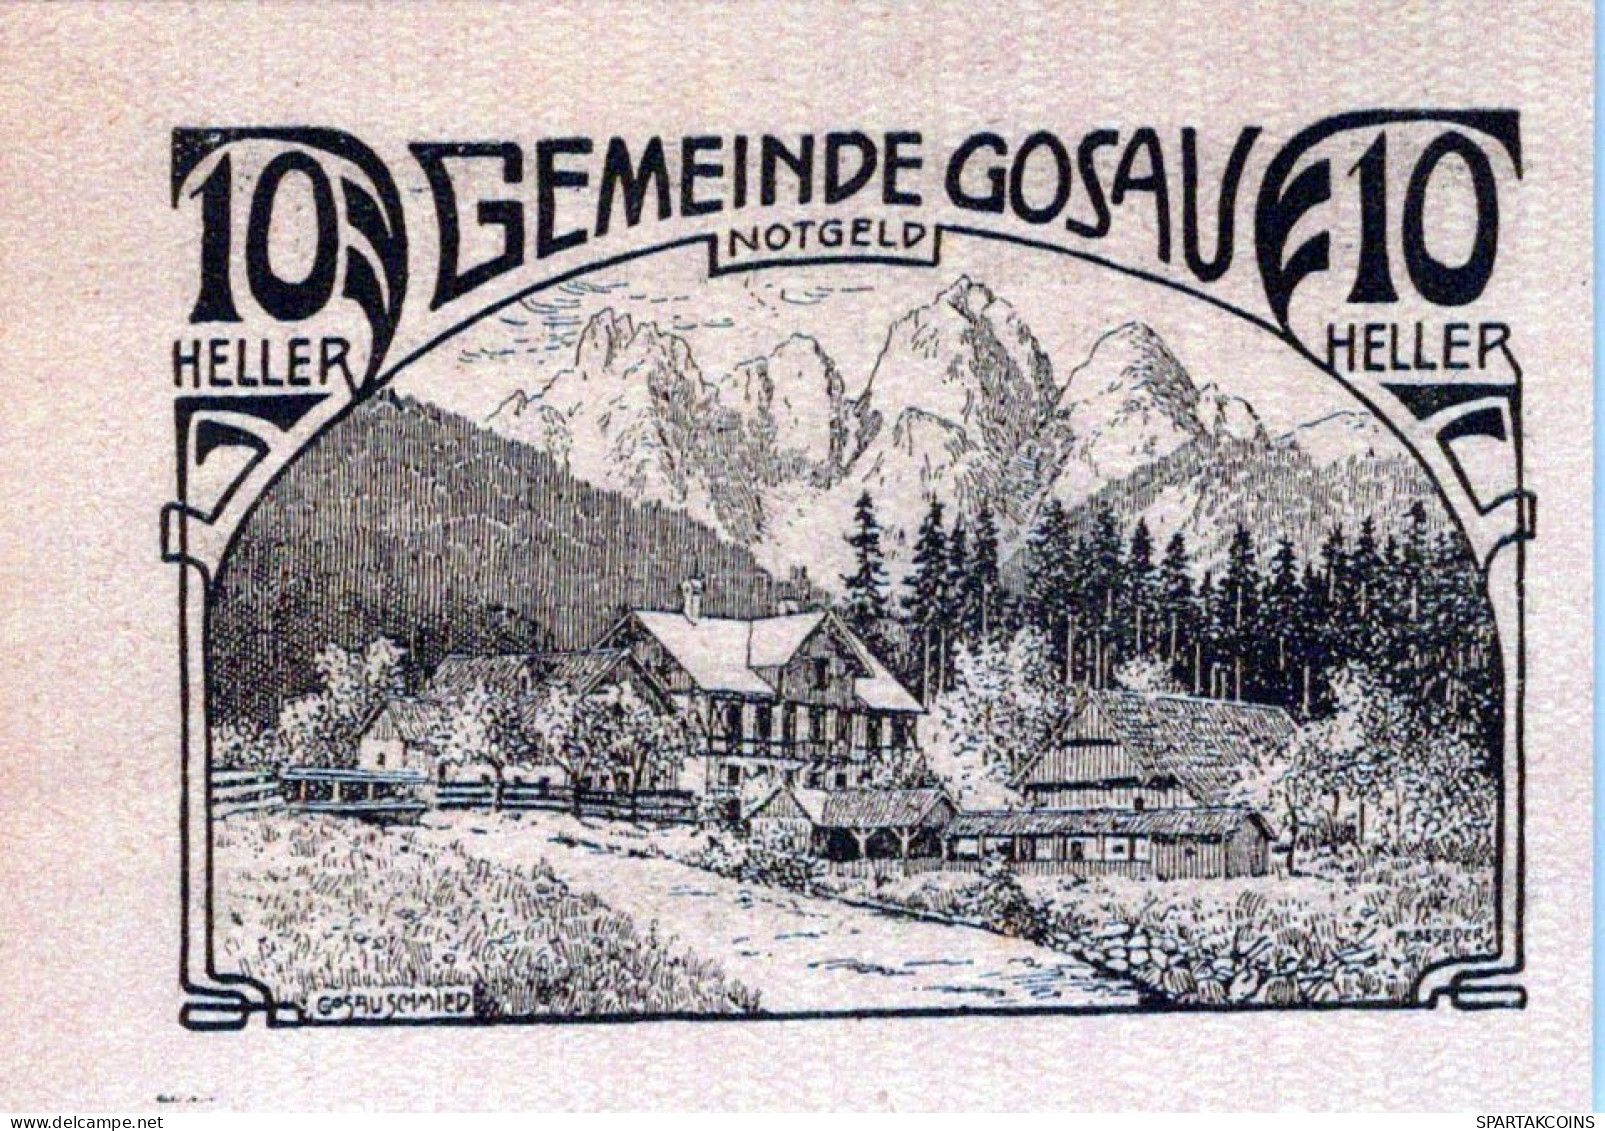 10 HELLER 1920 Stadt GOSAU Oberösterreich Österreich Notgeld Papiergeld Banknote #PG830 - [11] Lokale Uitgaven